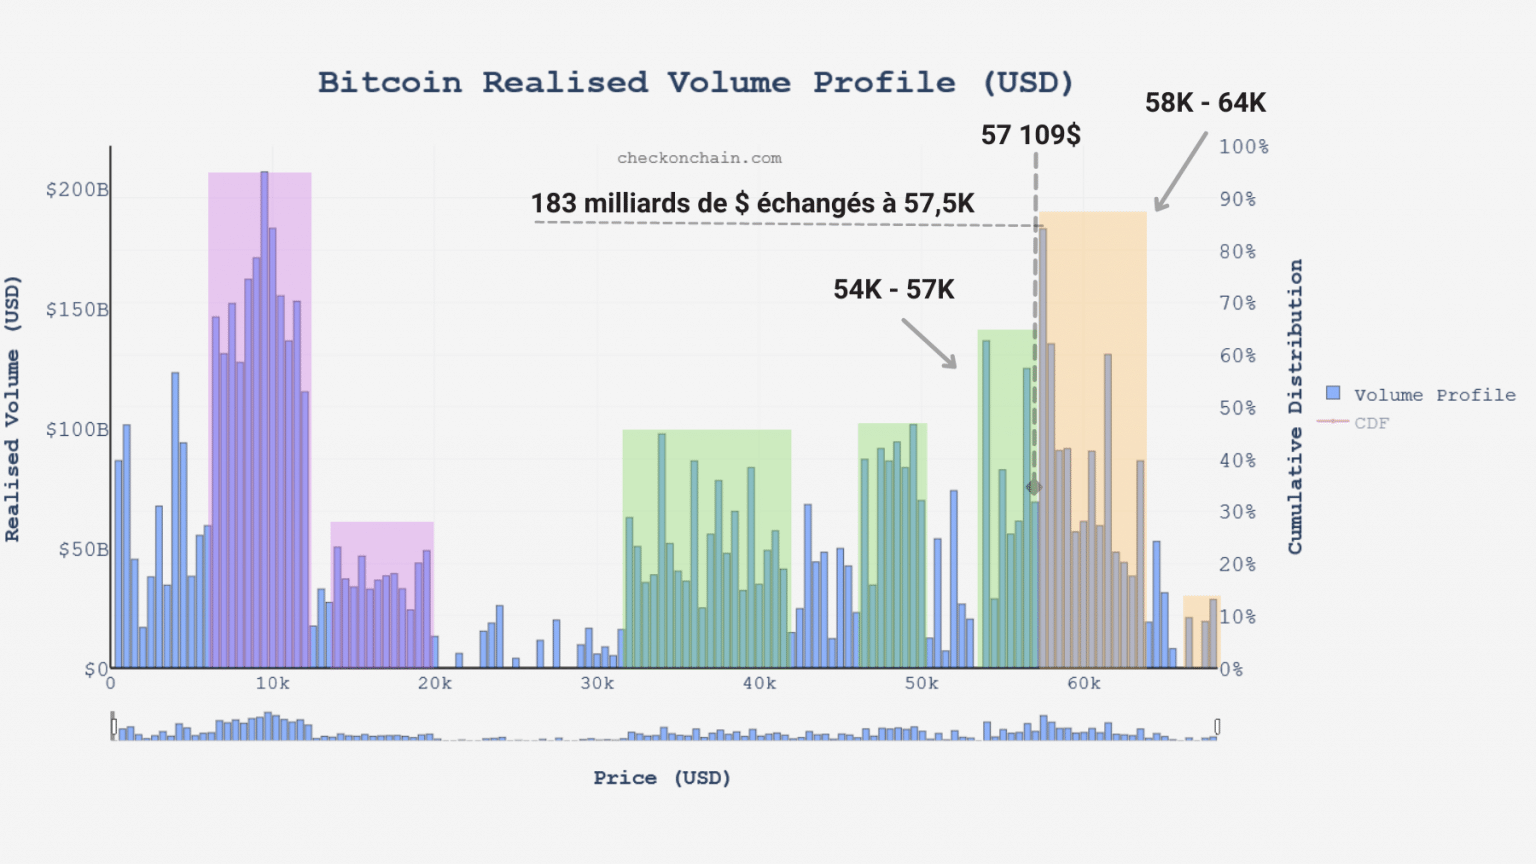 Grafico del volume realizzato di bitcoin (BTC) (Fonte: checkonchain.com)